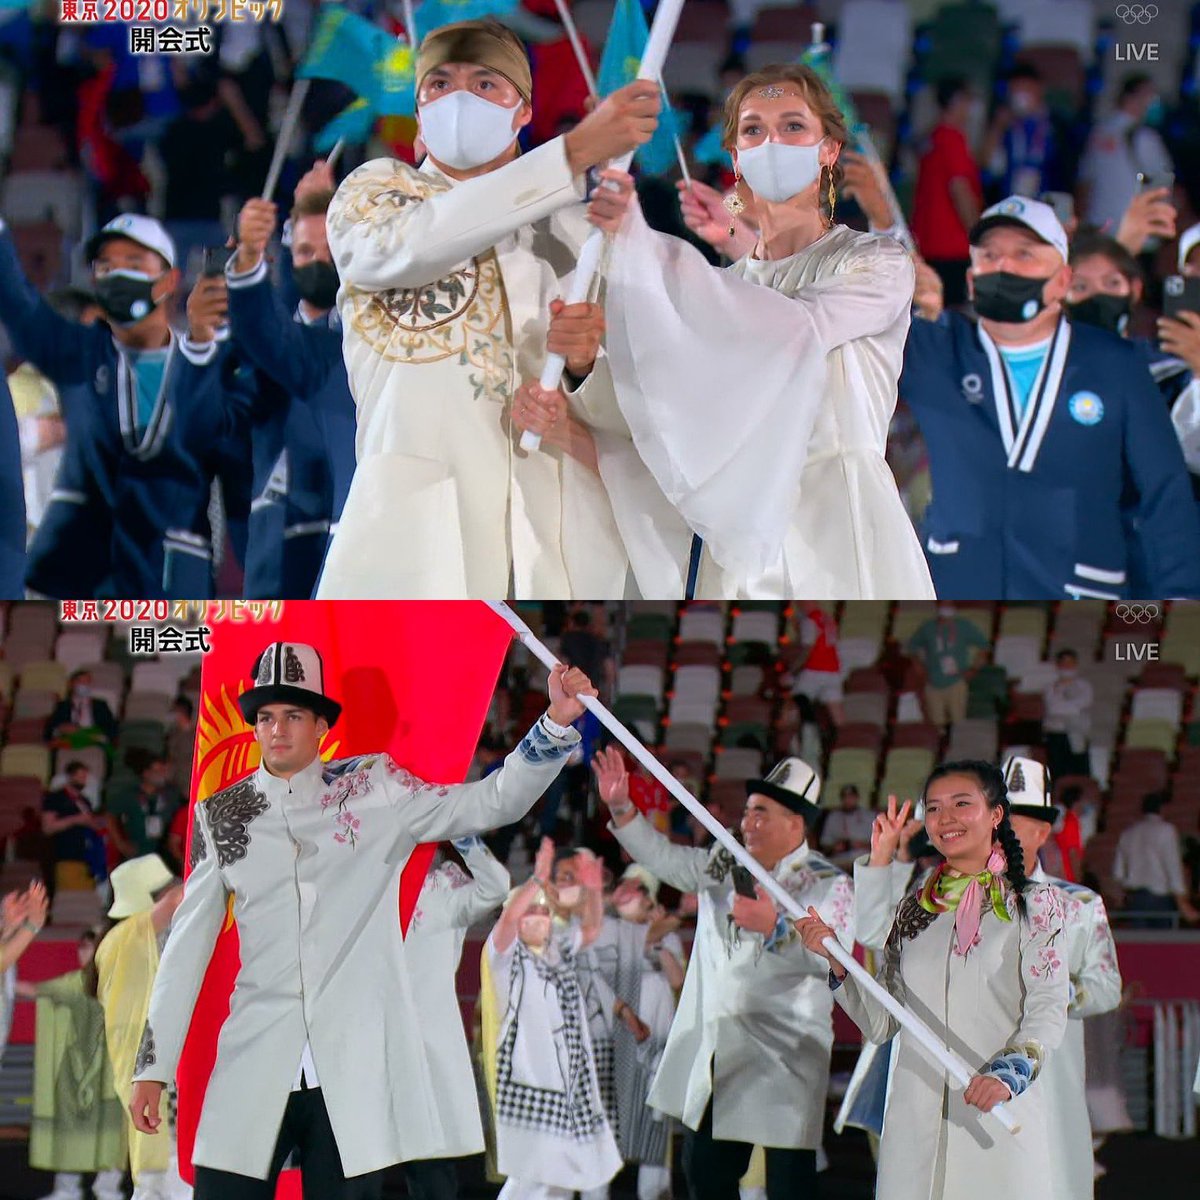 オリンピック開会式で注目の各国の衣装がどれも素敵で眼福 桜や富士山入れてくれてるの嬉しい ドイツの背中が Togetter